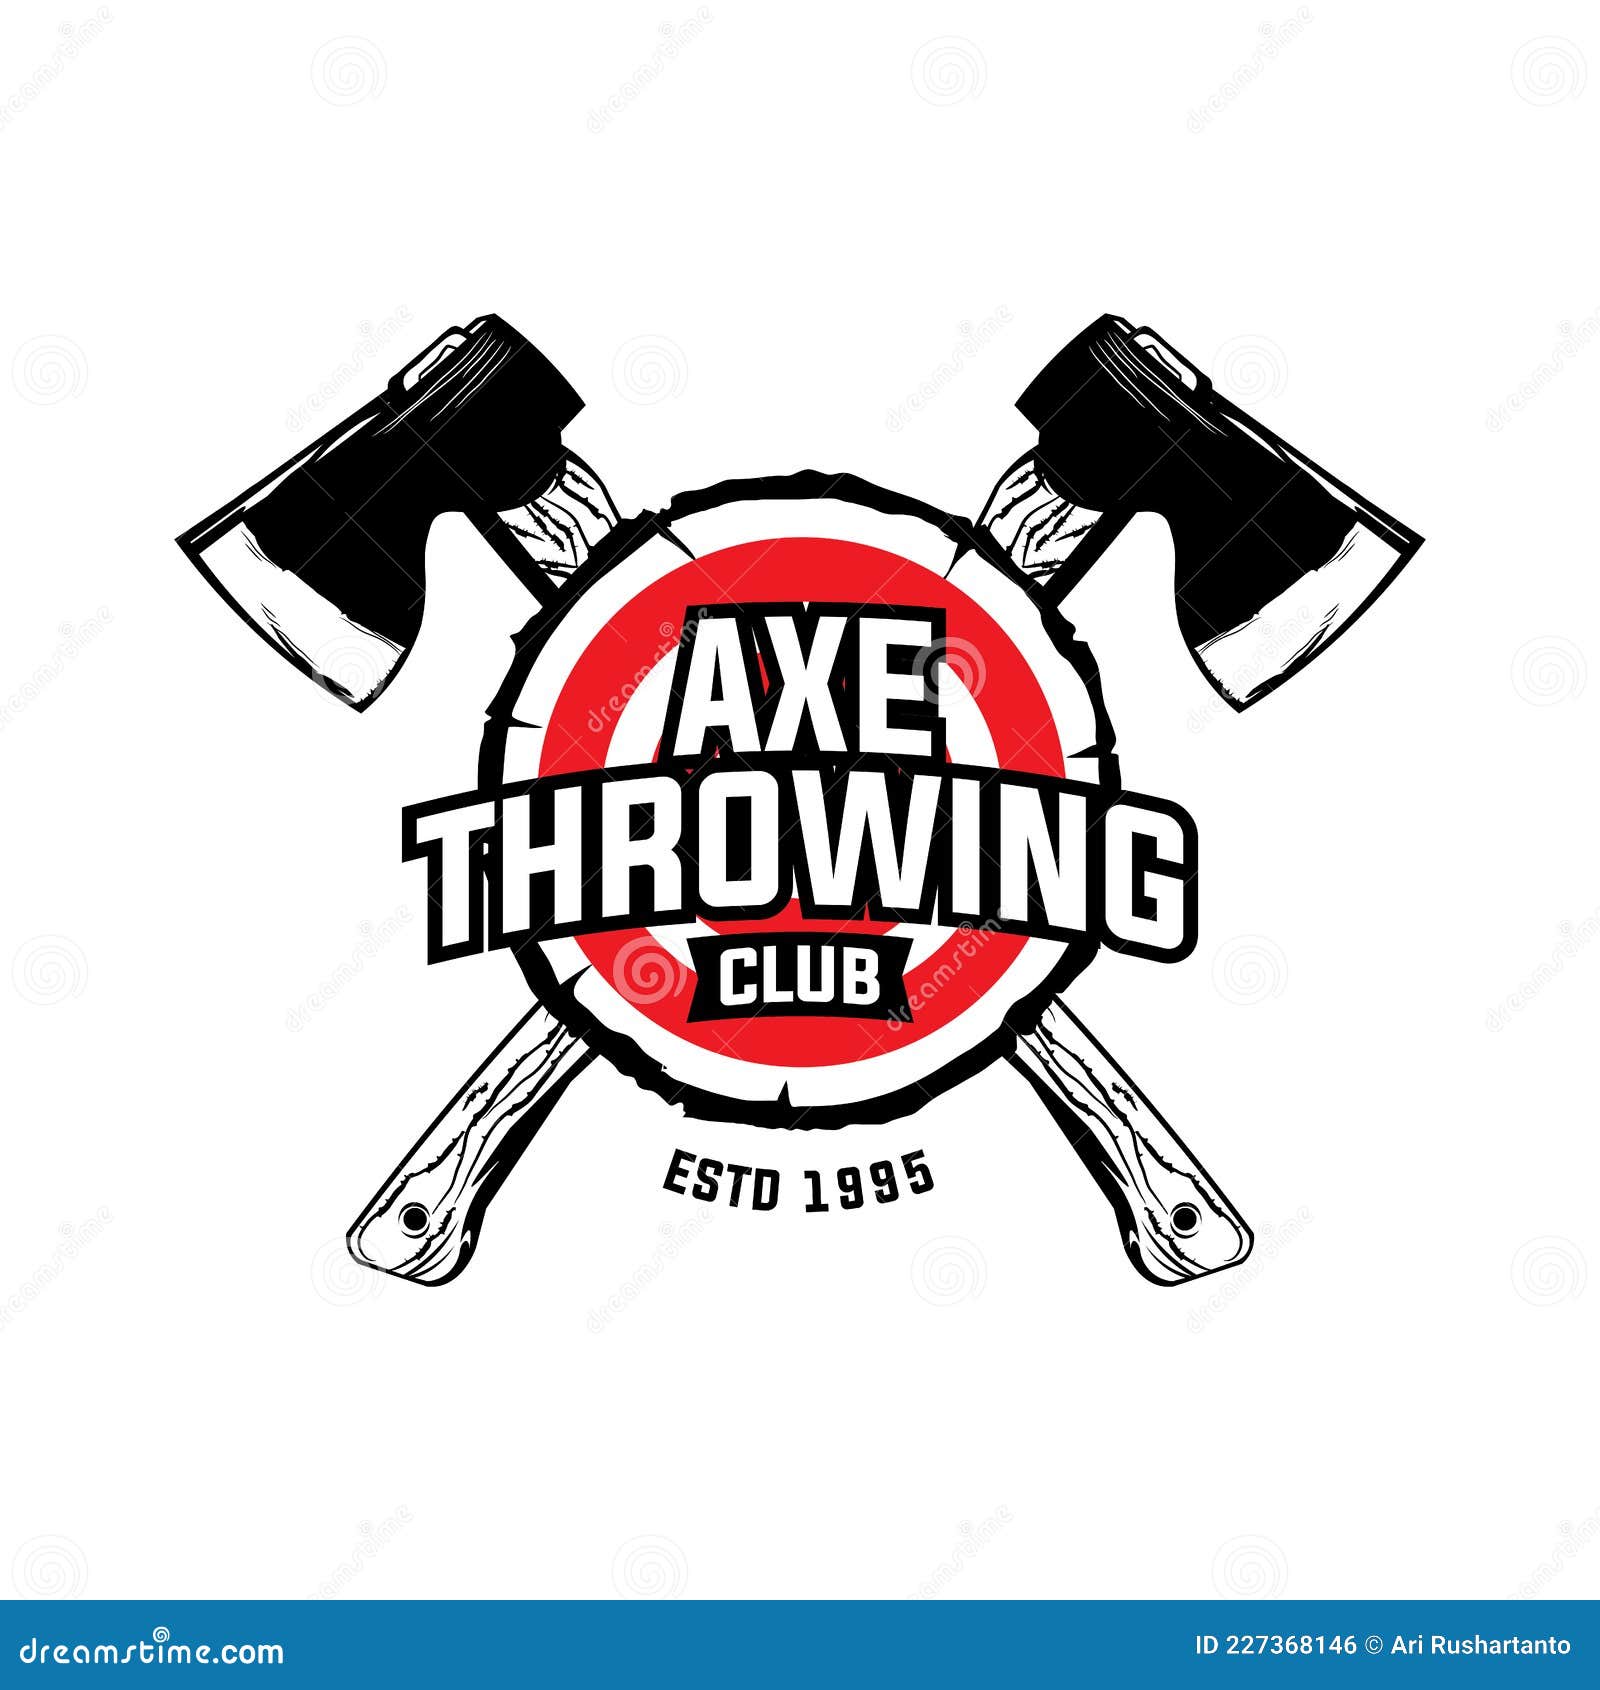 axe throwing club wood target logo 